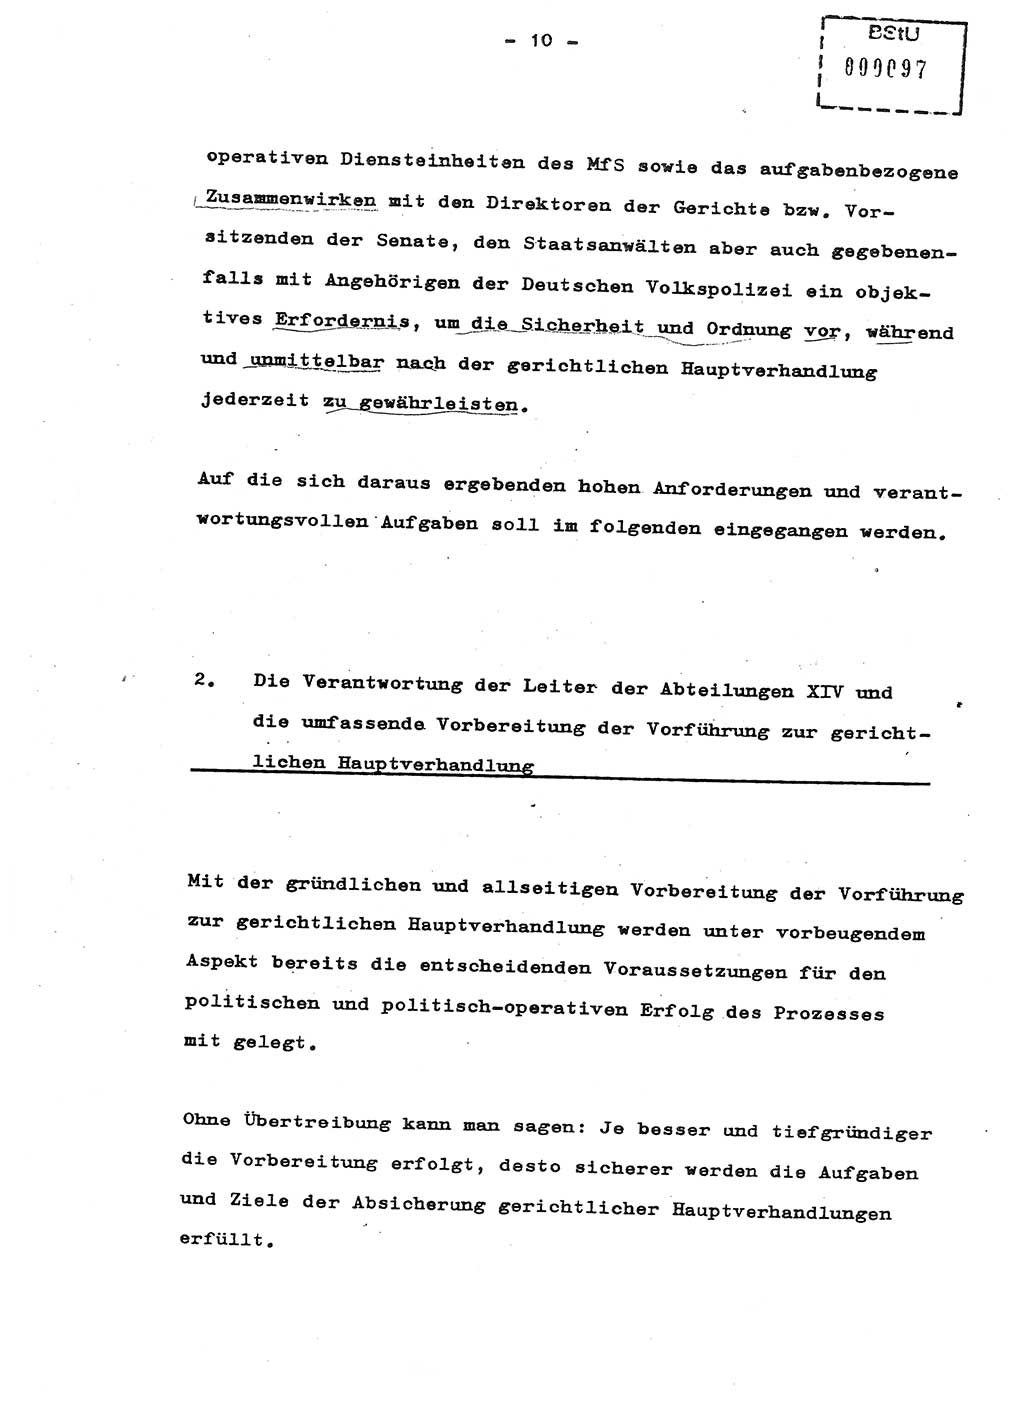 Schulungsmaterial Exemplar-Nr.: 8, Ministerium für Staatssicherheit [Deutsche Demokratische Republik (DDR)], Abteilung (Abt.) ⅩⅣ, Berlin 1987, Seite 10 (Sch.-Mat. Expl. 8 MfS DDR Abt. ⅩⅣ /87 1987, S. 10)